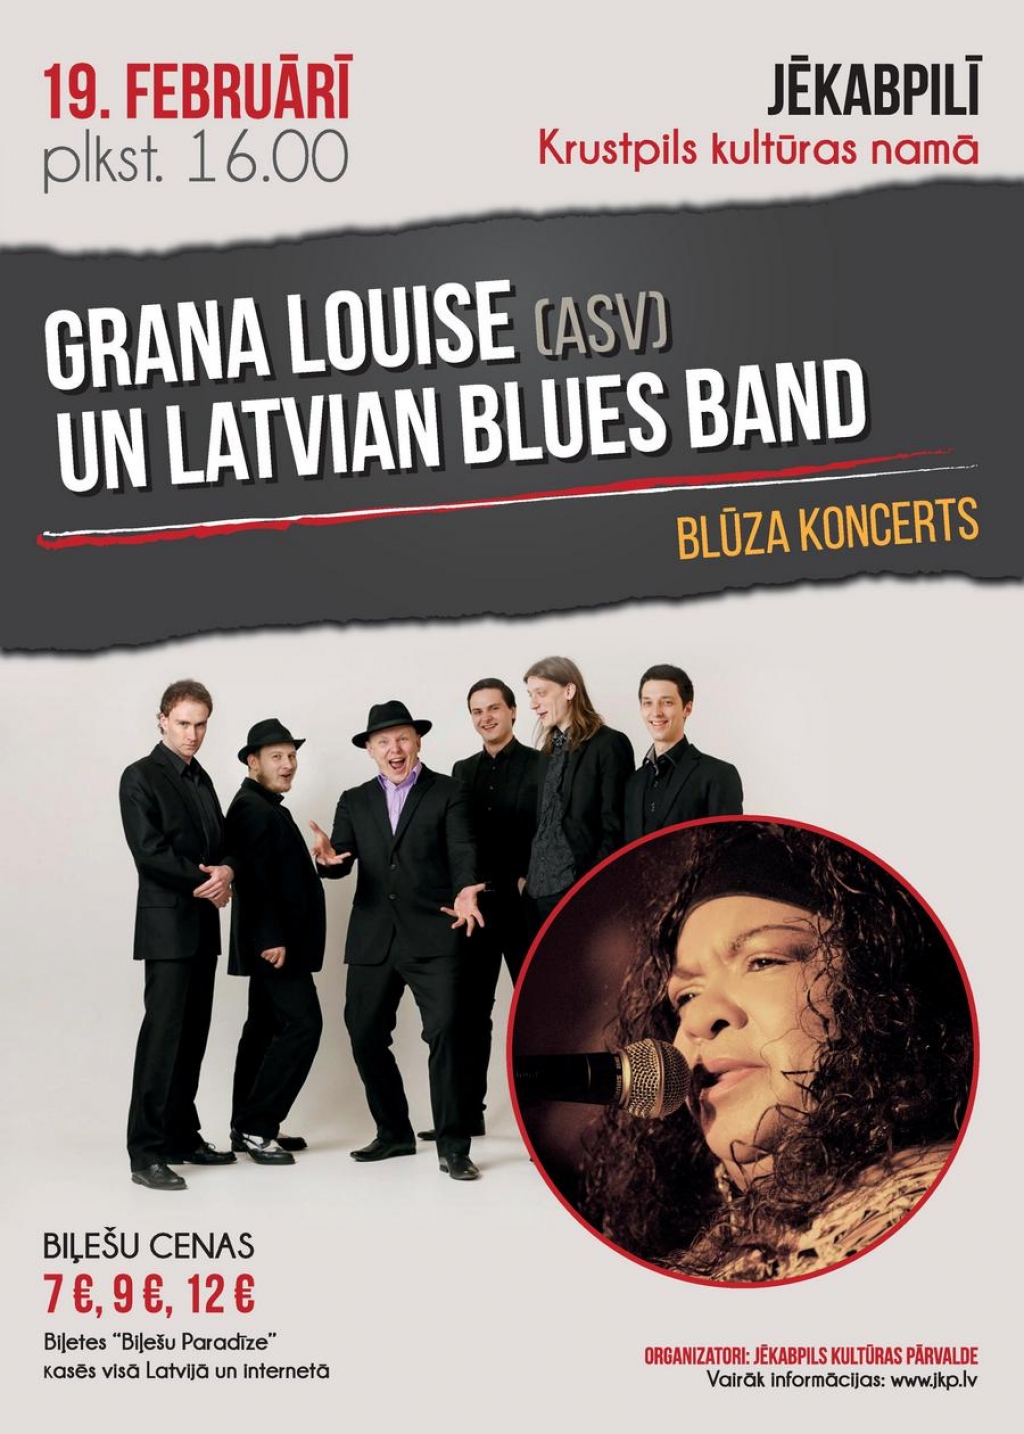 “Latvian Blues Band” Jēkabpilī muzicēs kopā ar Granu Louise no Amerikas Savienotajām Valstīm